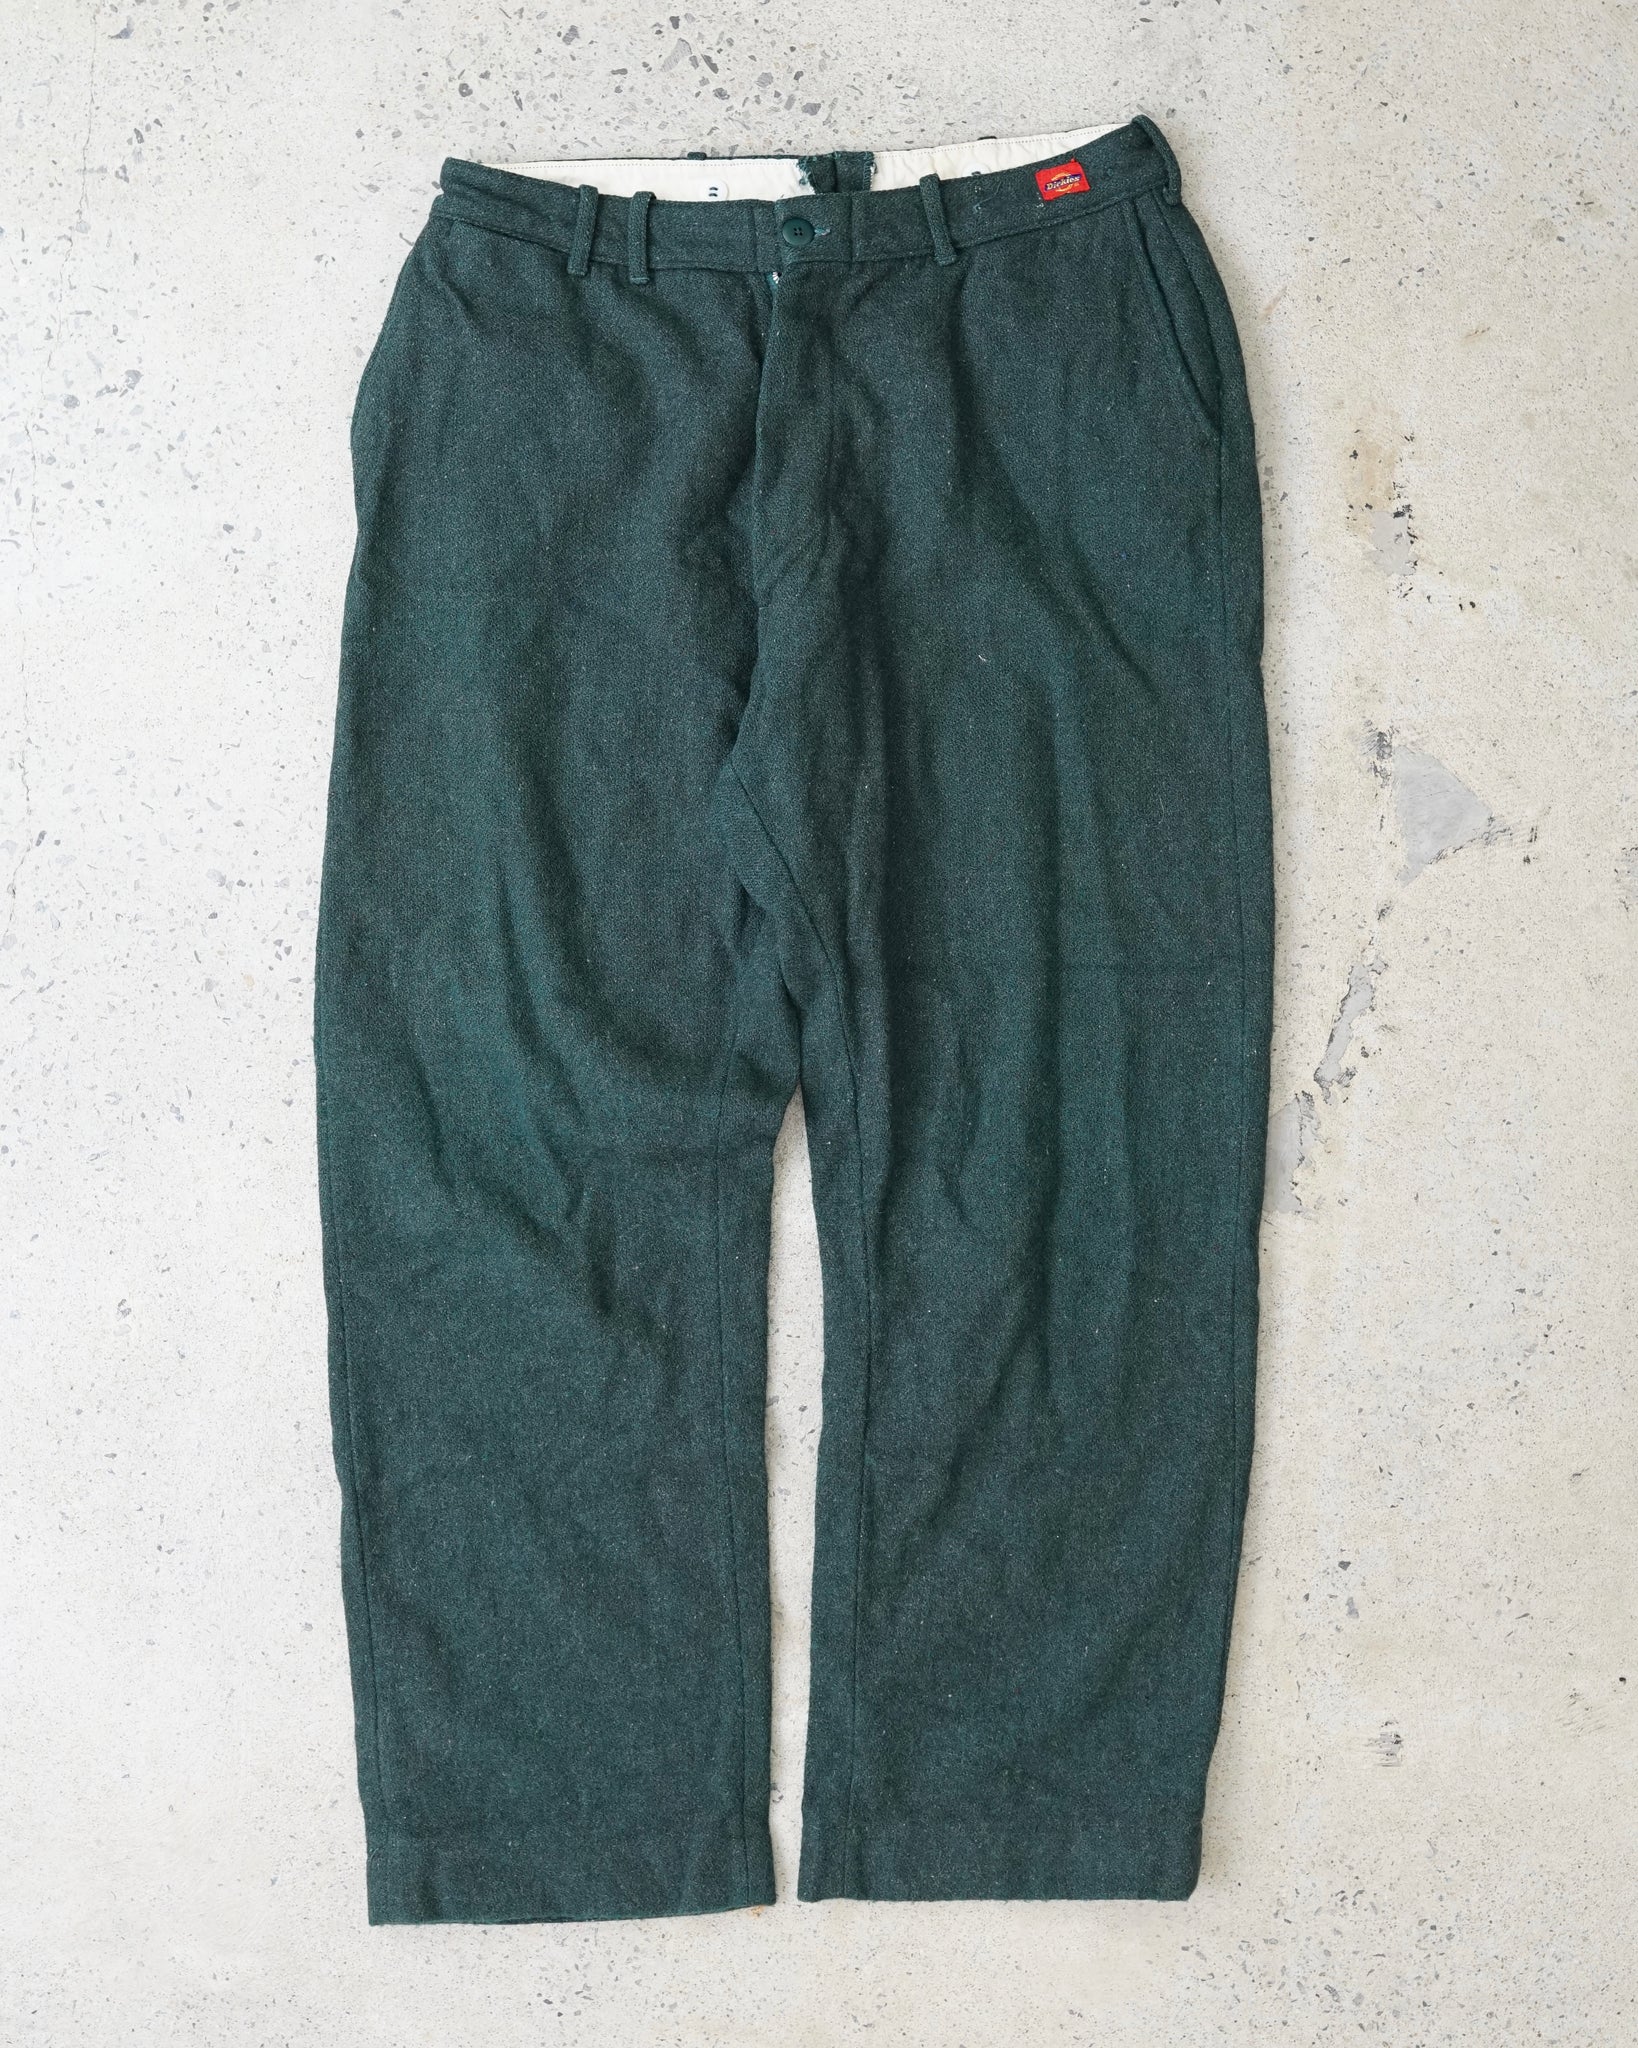 dickies vintage pants - 36x30